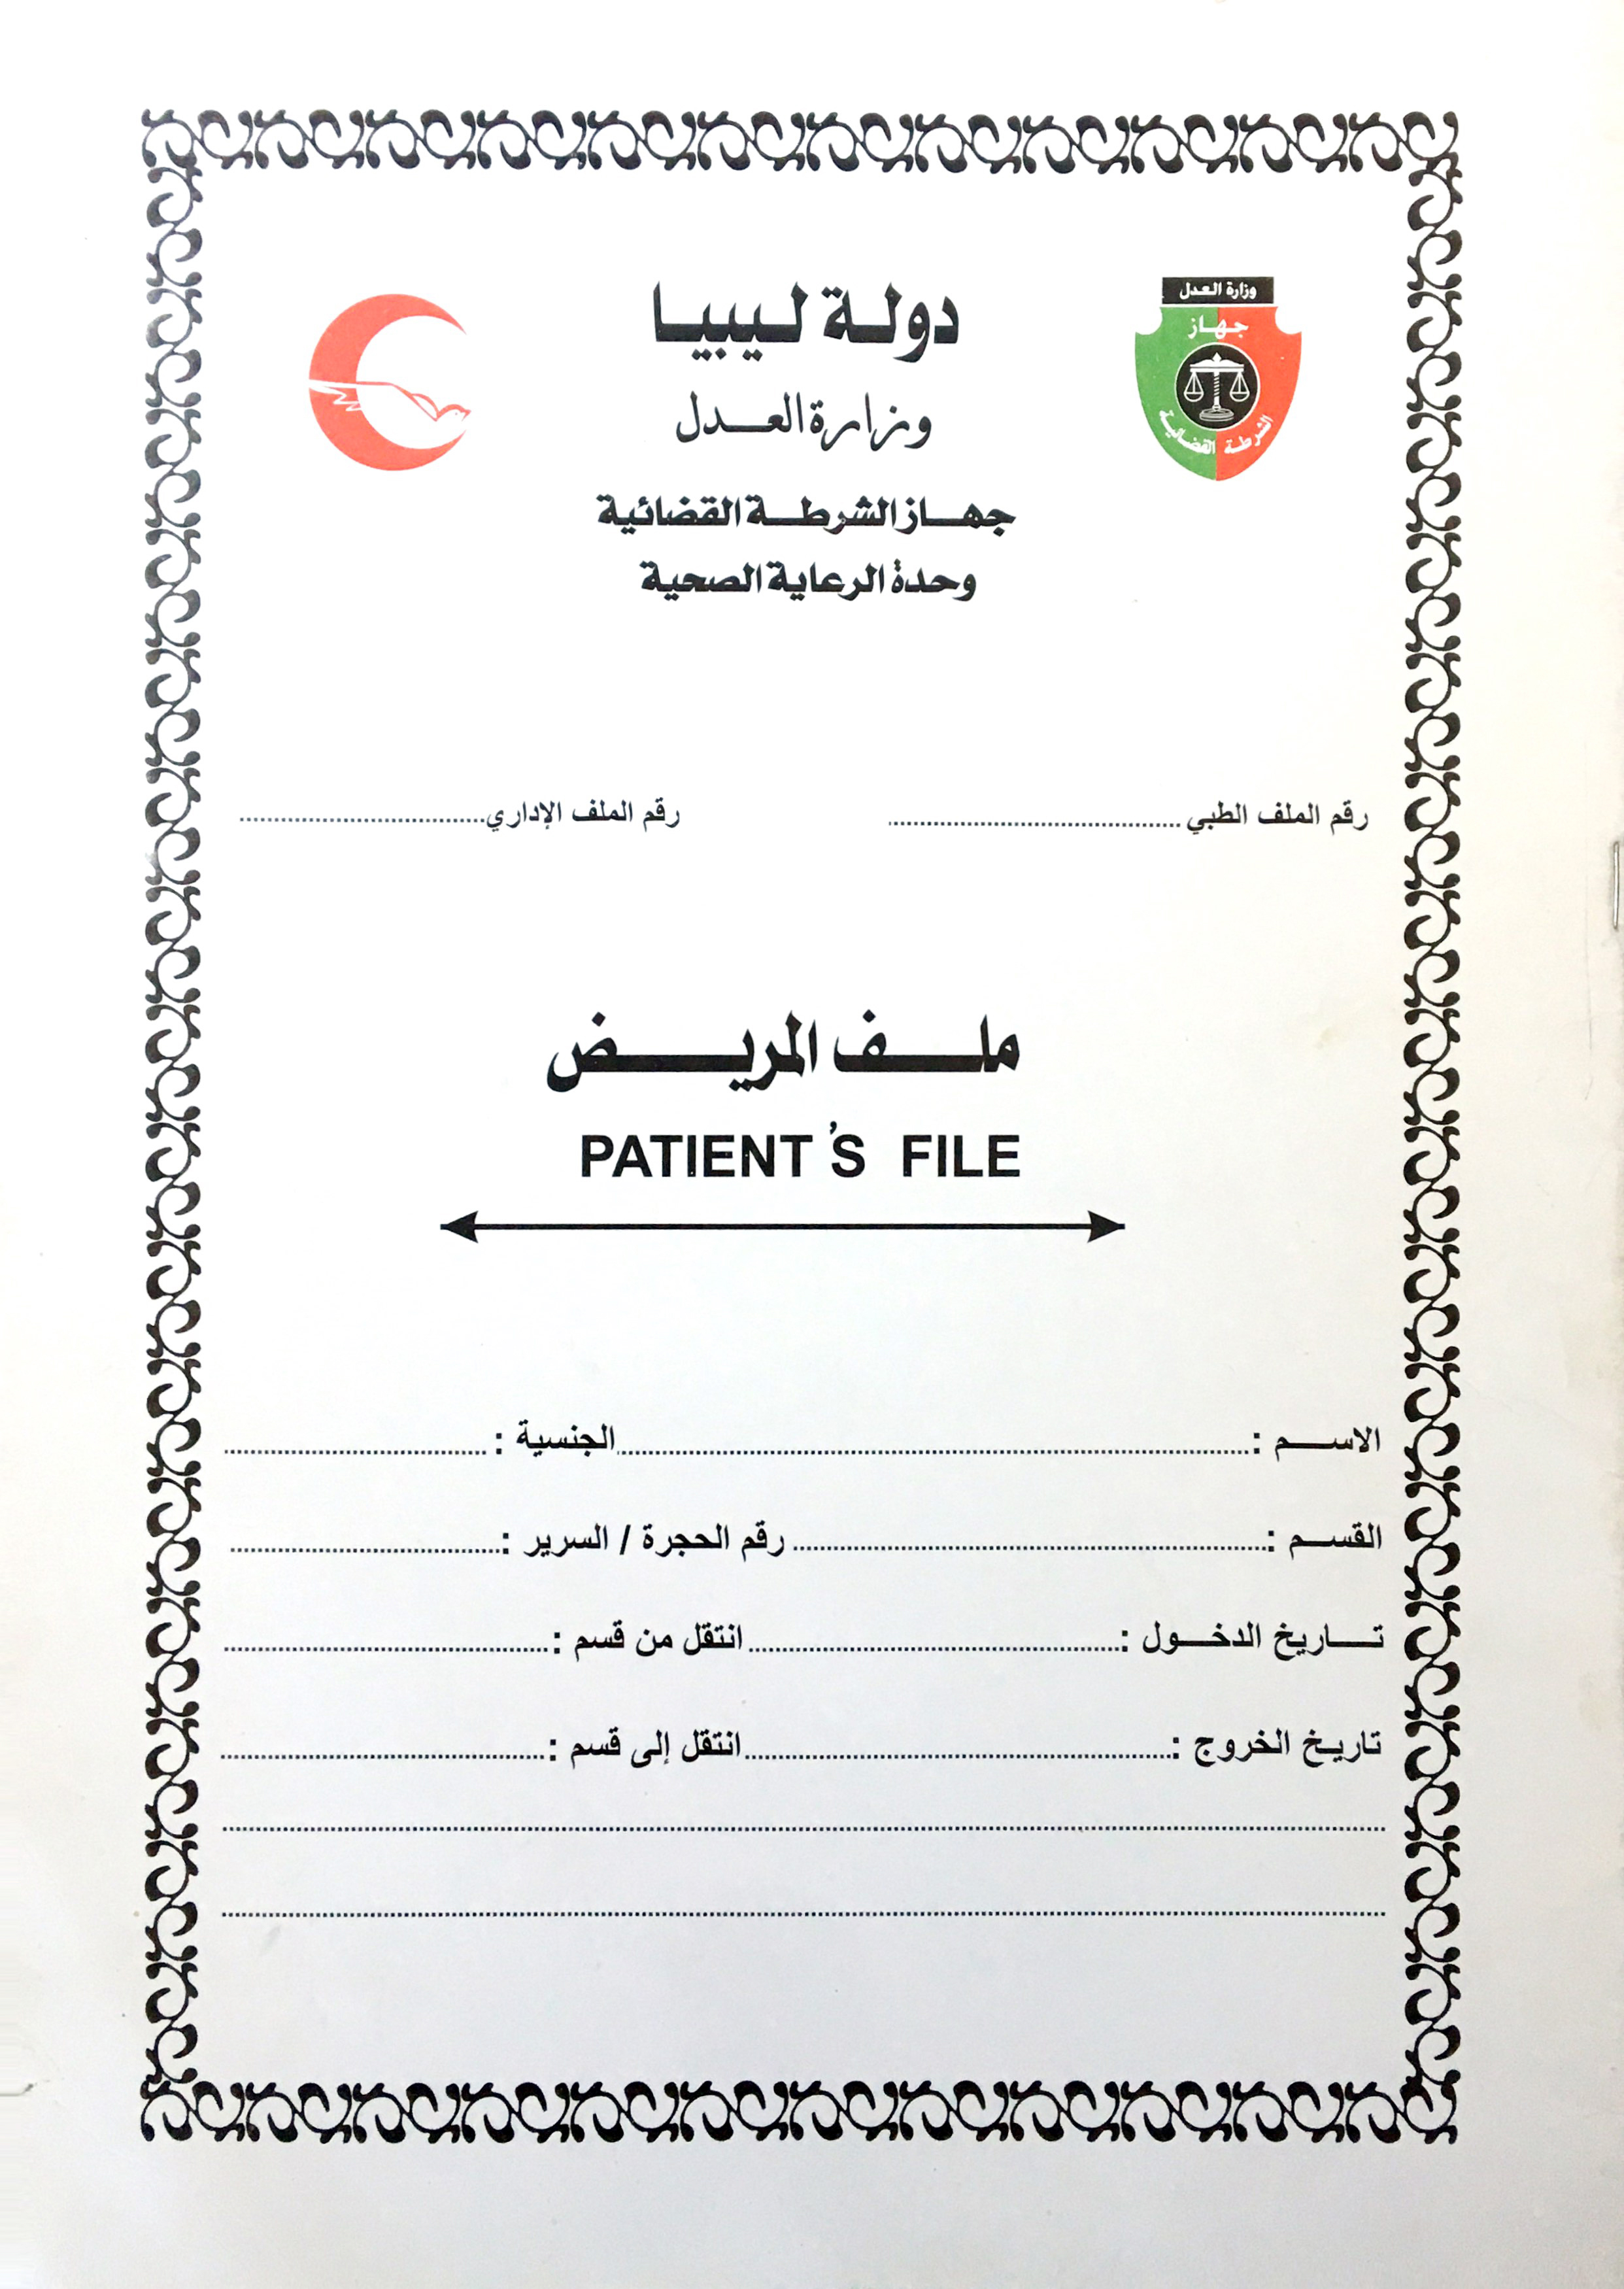 الرعاية الصحية في ح لتها الجديدة وزارة العدل دولة ليبيا